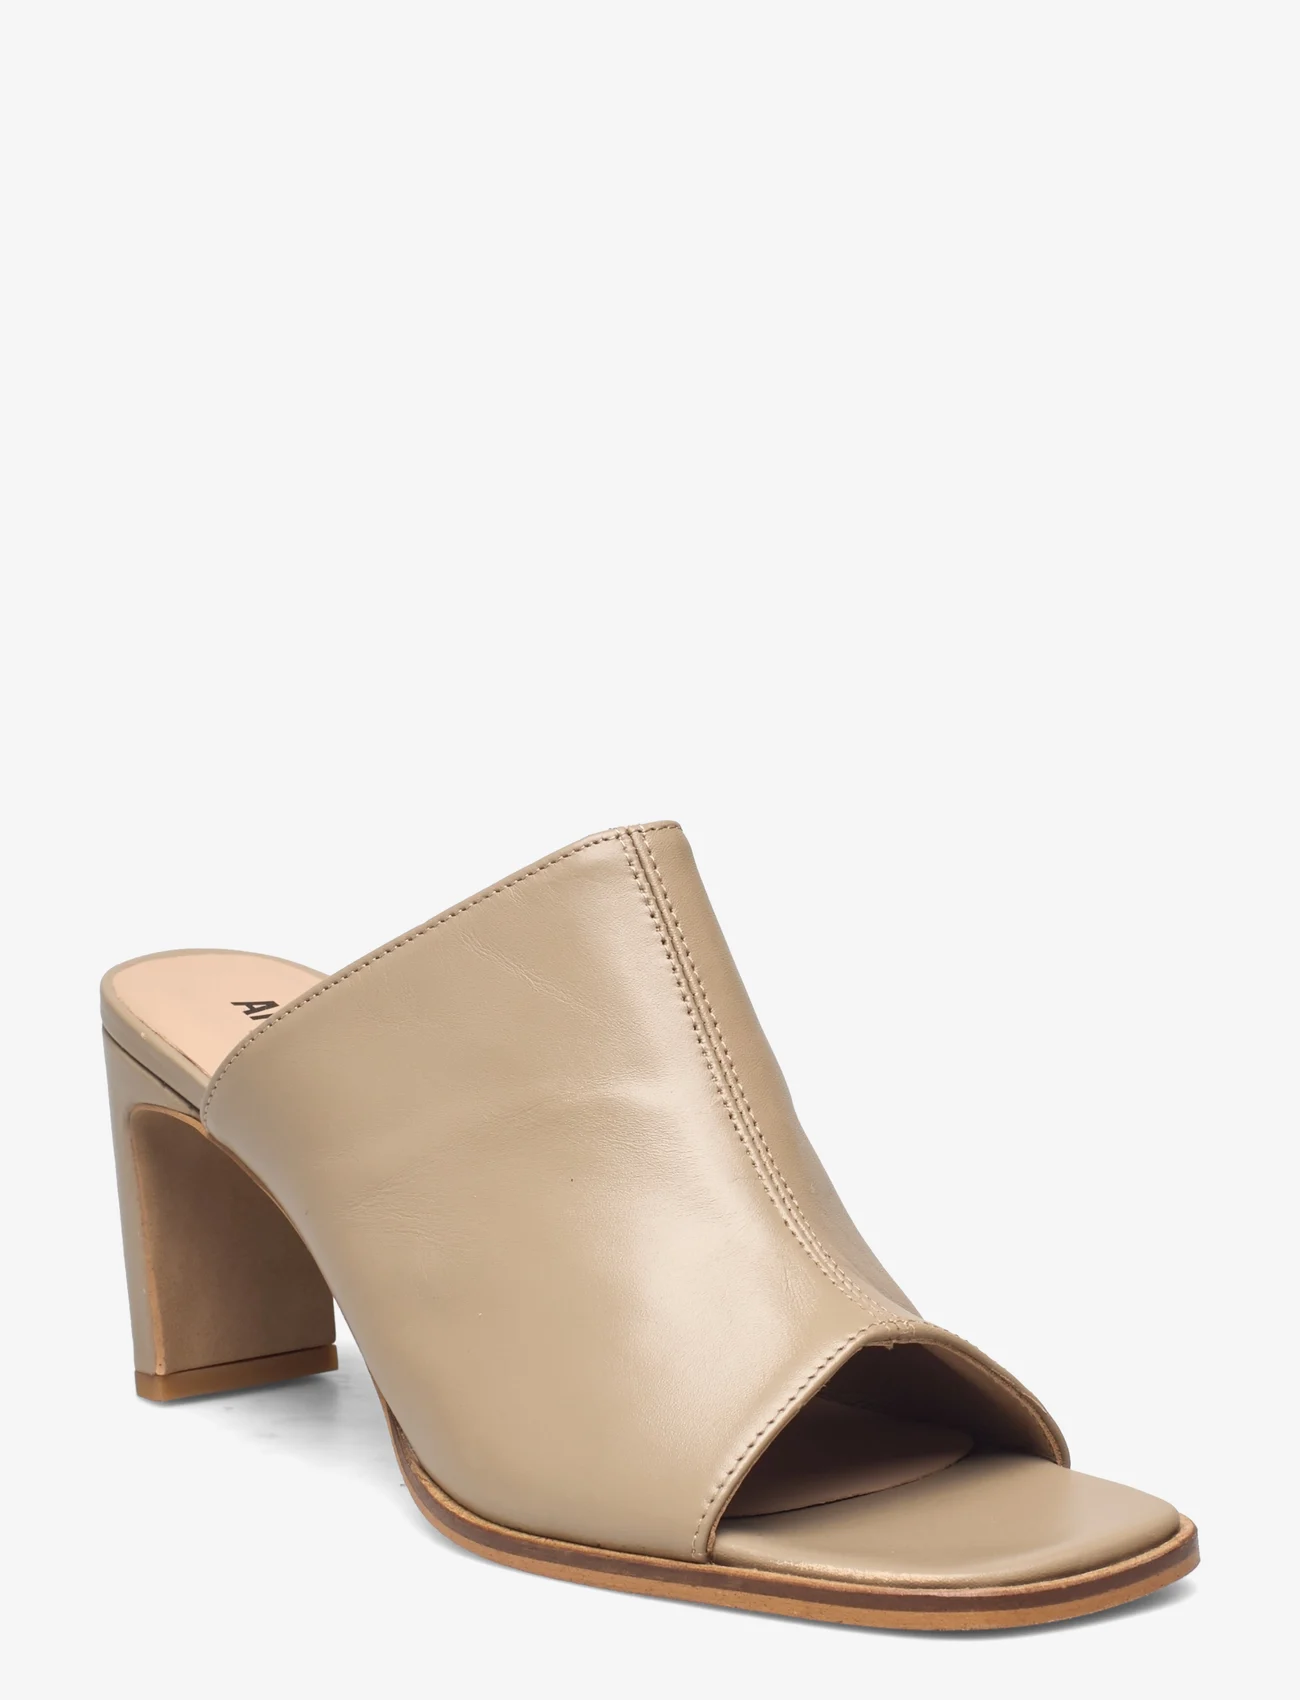 ANGULUS - Sandals - Block heels - heeled mules - 1571 beige - 0